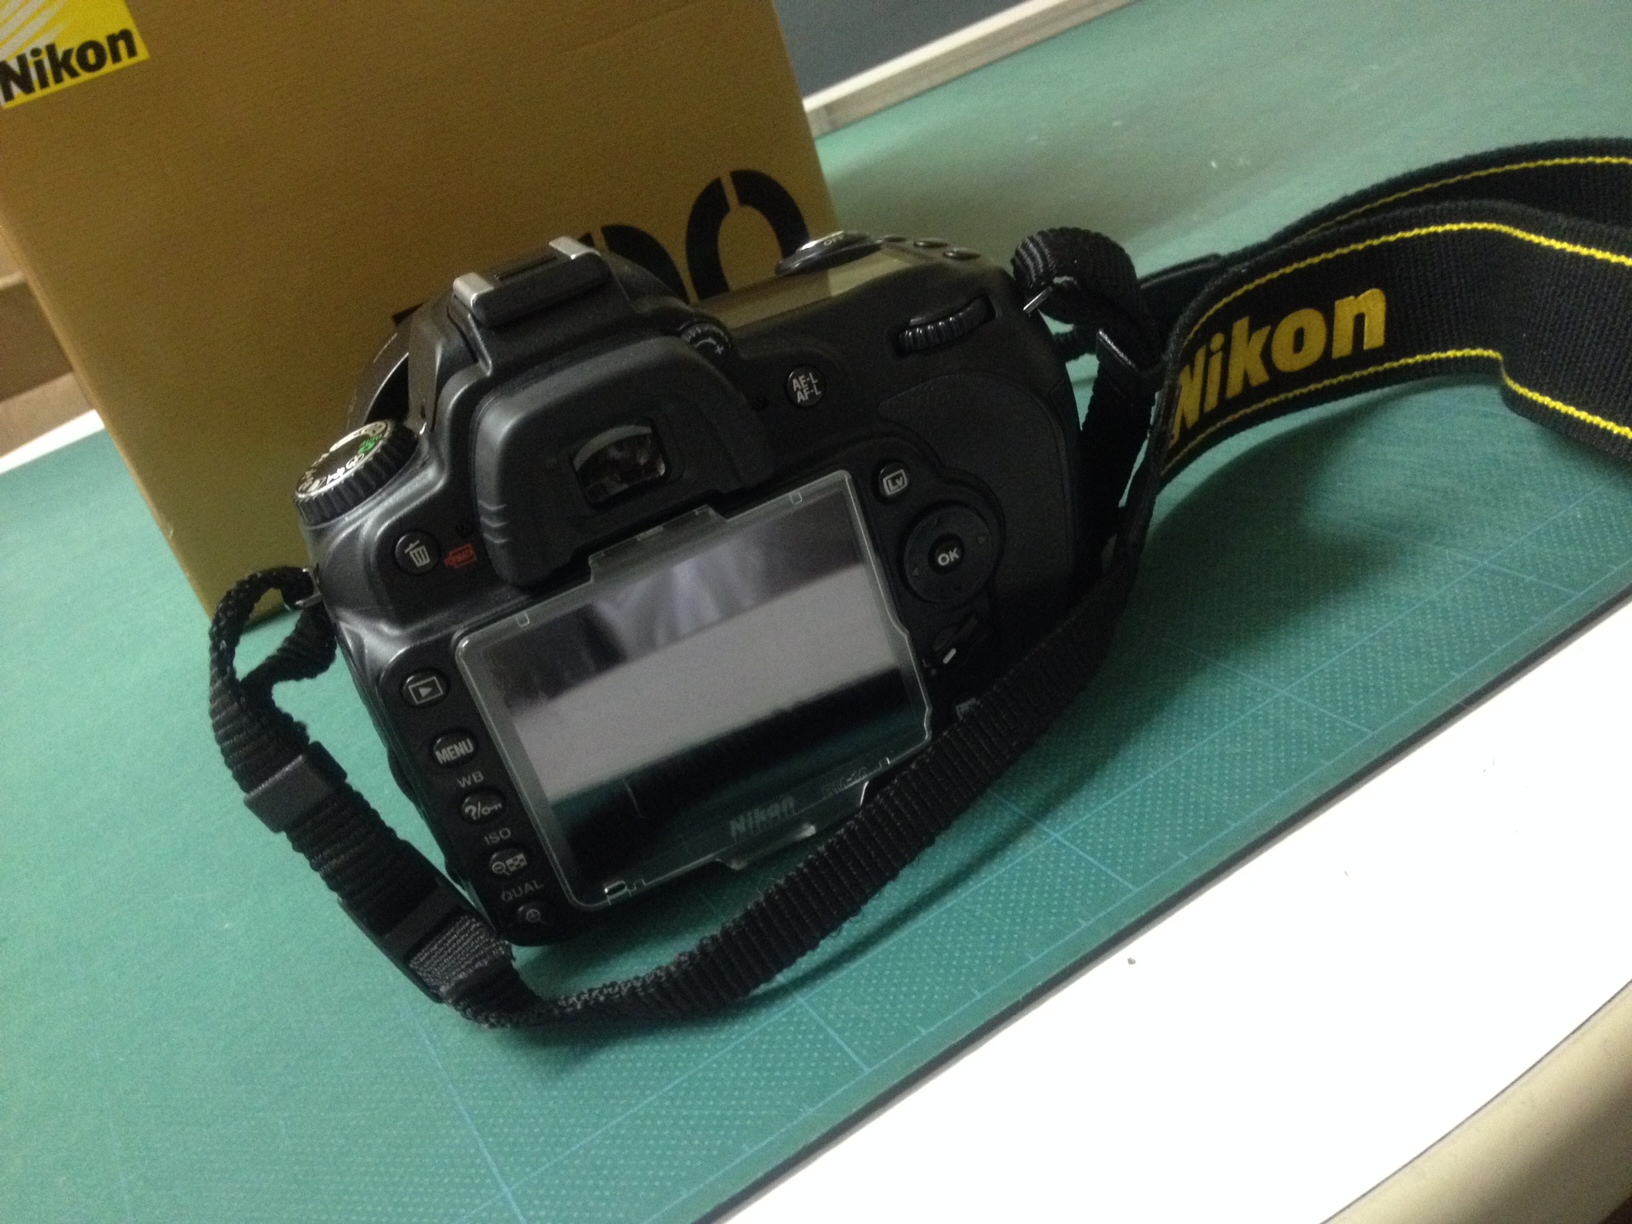 2台目のデジタル一眼レフカメラを購入しました… Nikon D90 | 禁断の果実